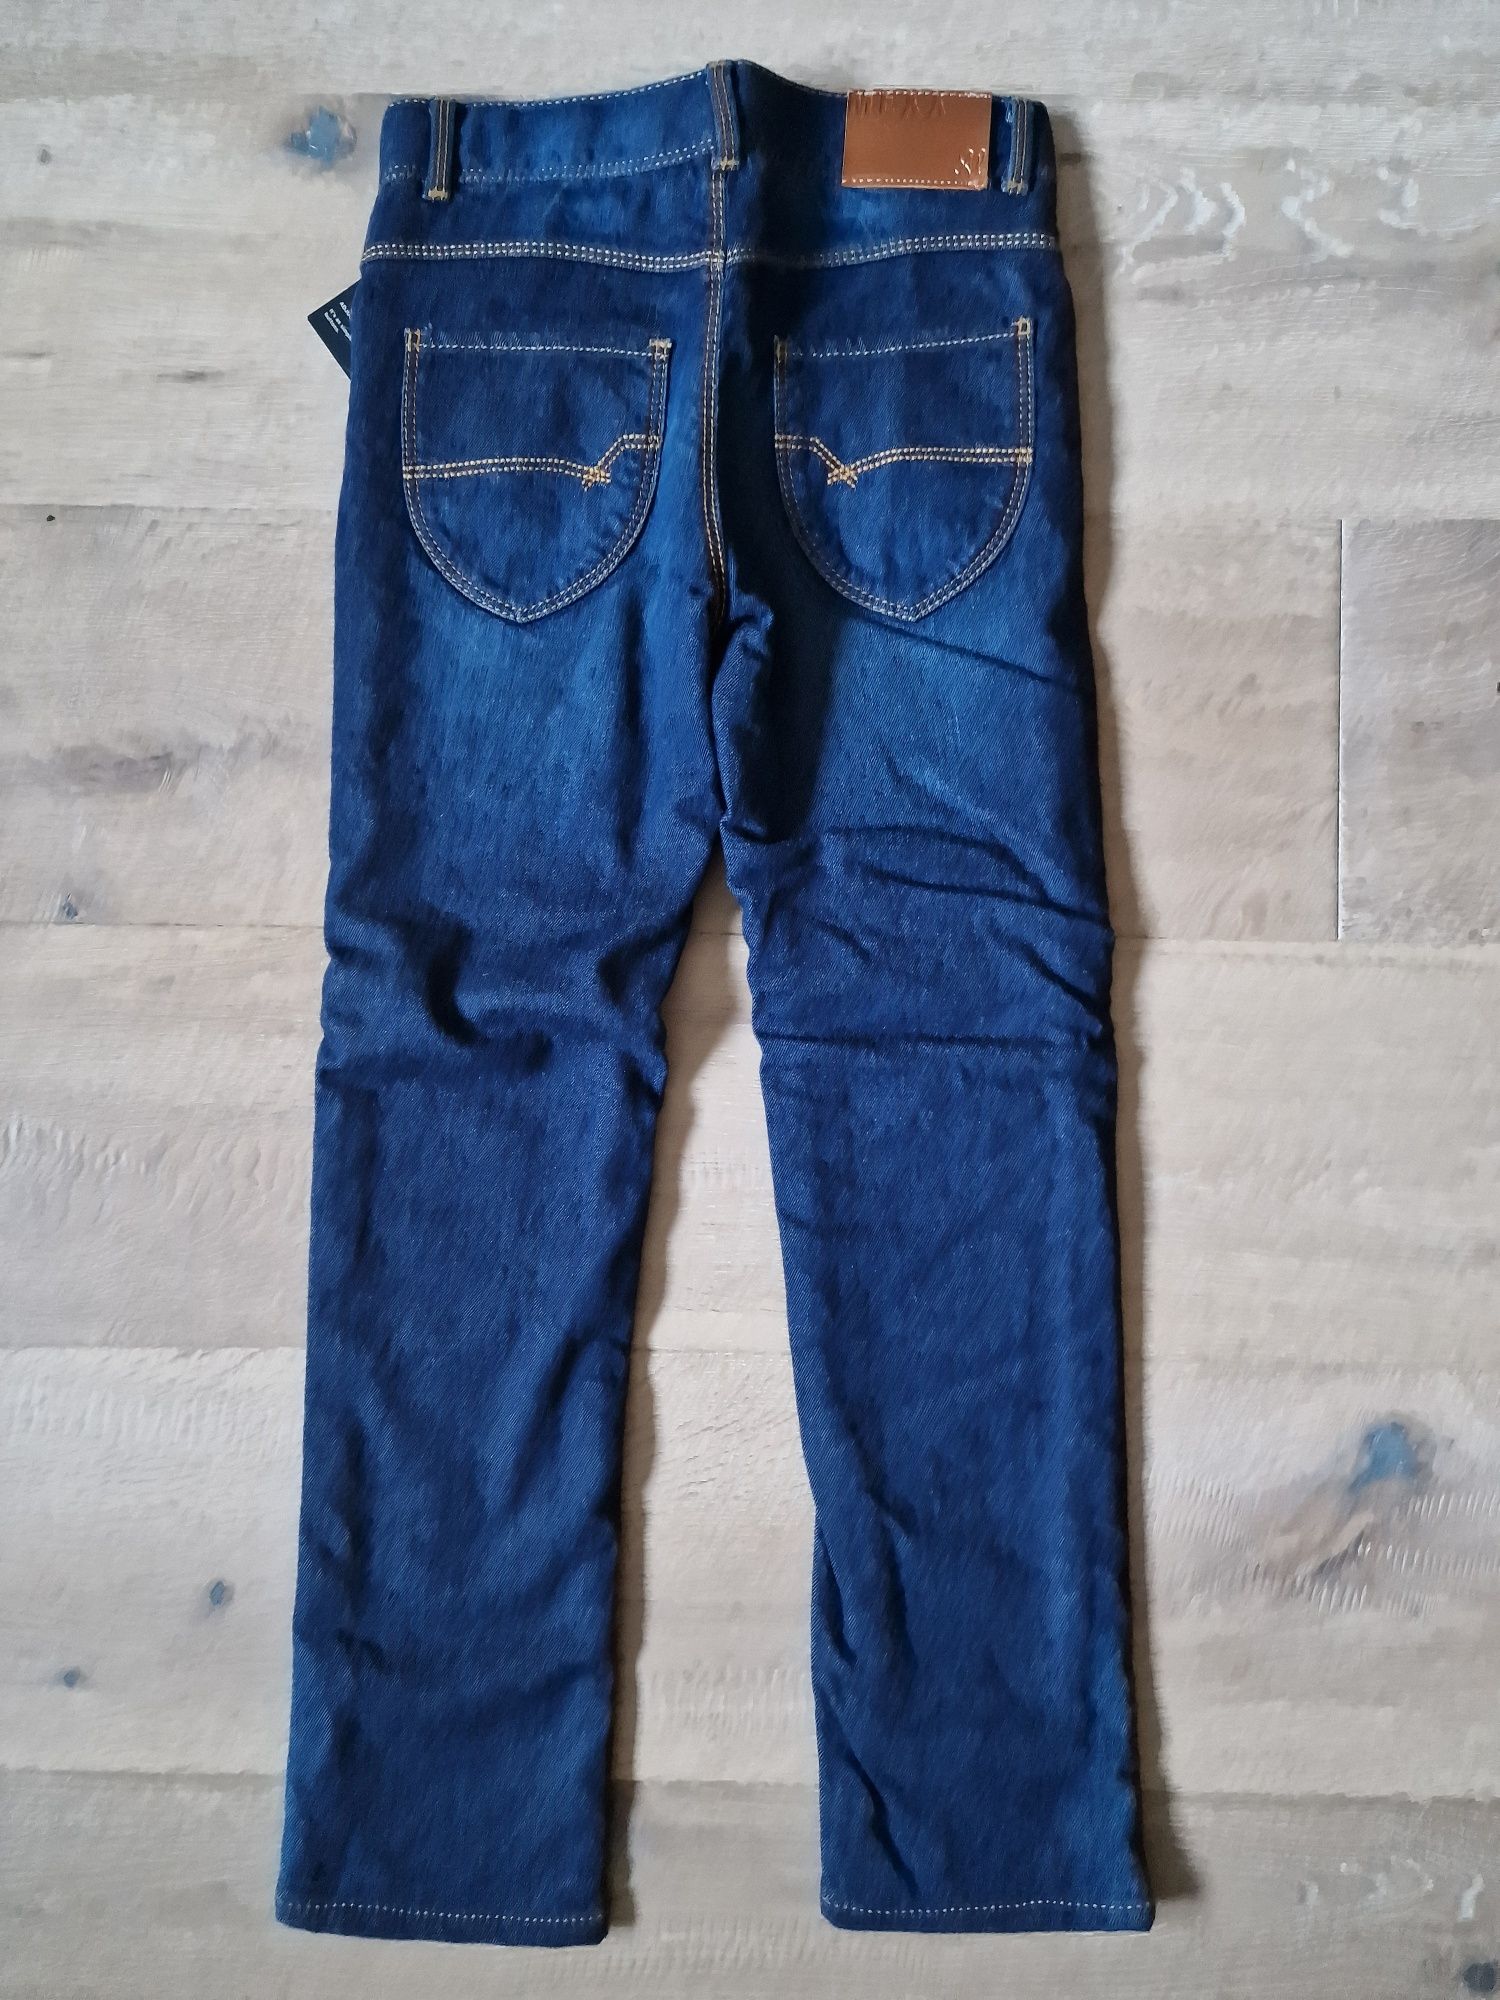 Spodnie ocieplane jeans MEXX, roz. 128 cm